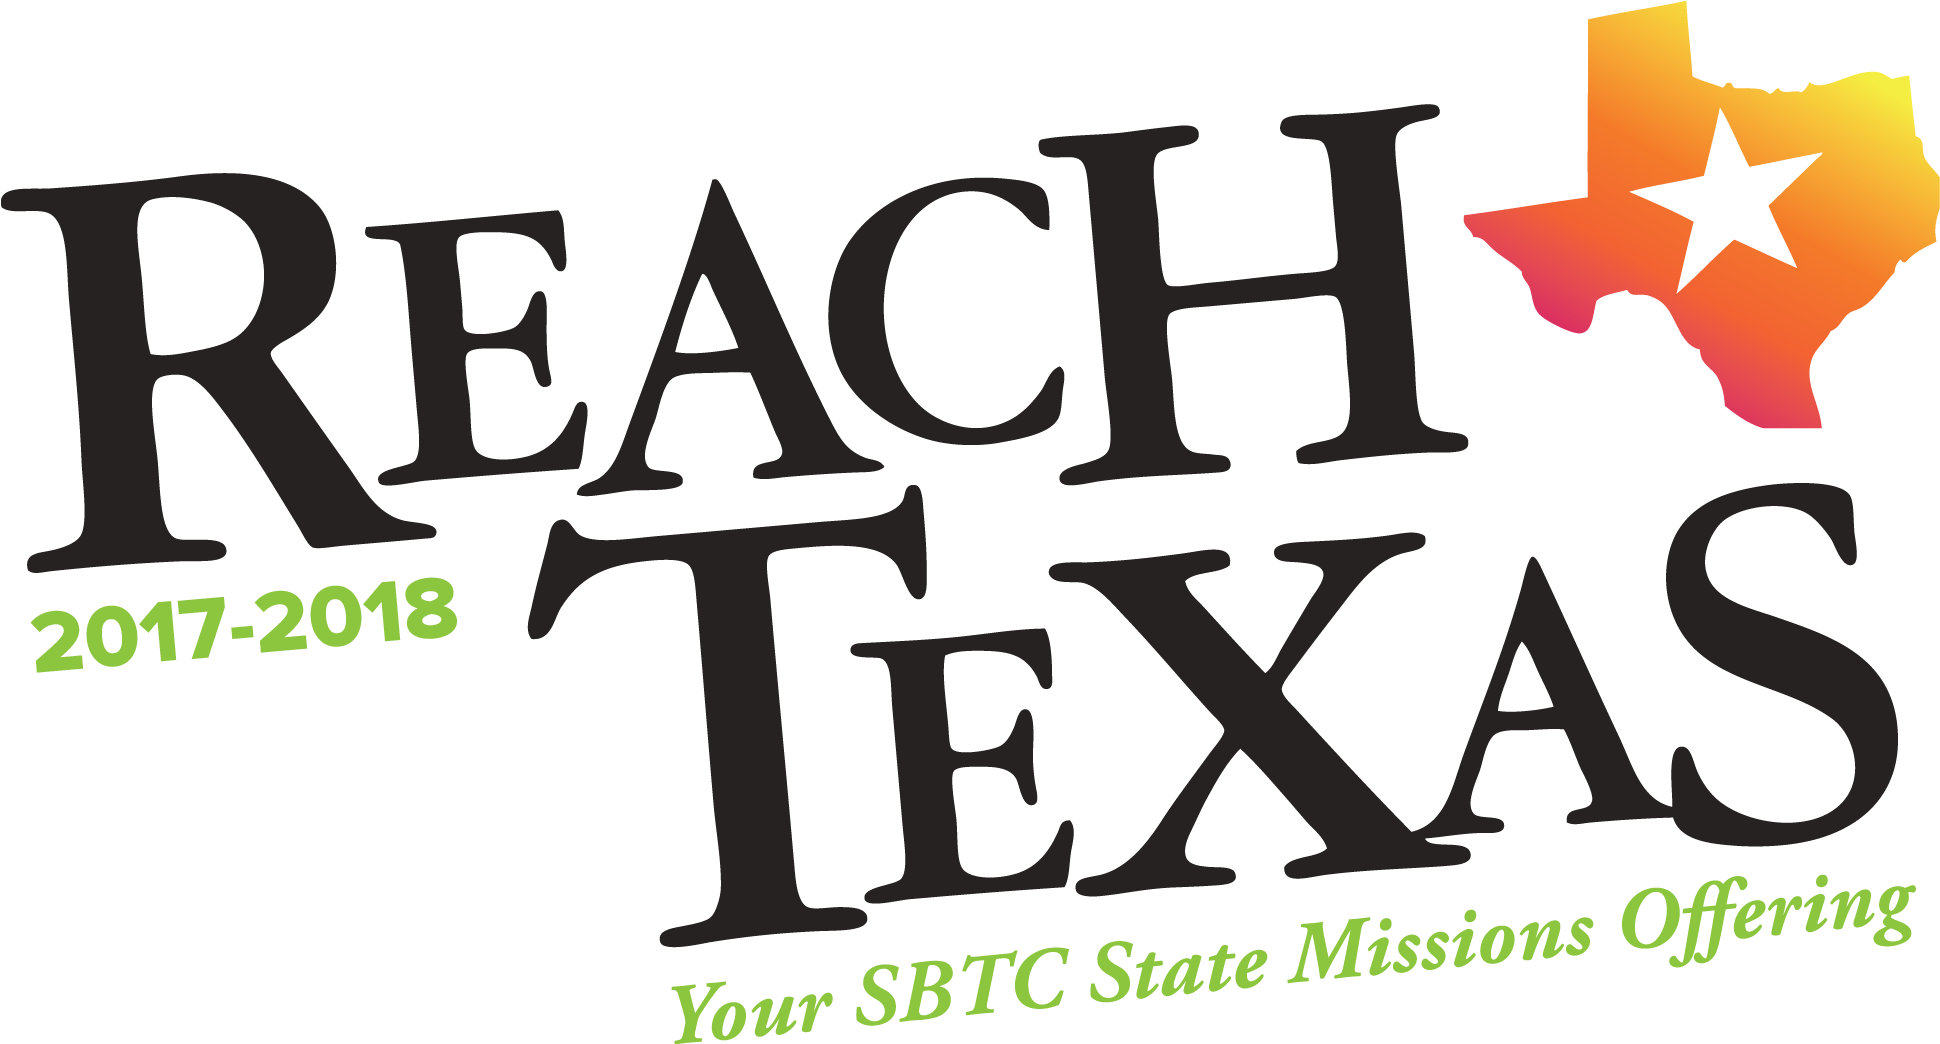 Reach Texas 2017 Bulletin Insert - Reach Texas Sbtc (2124x1250)